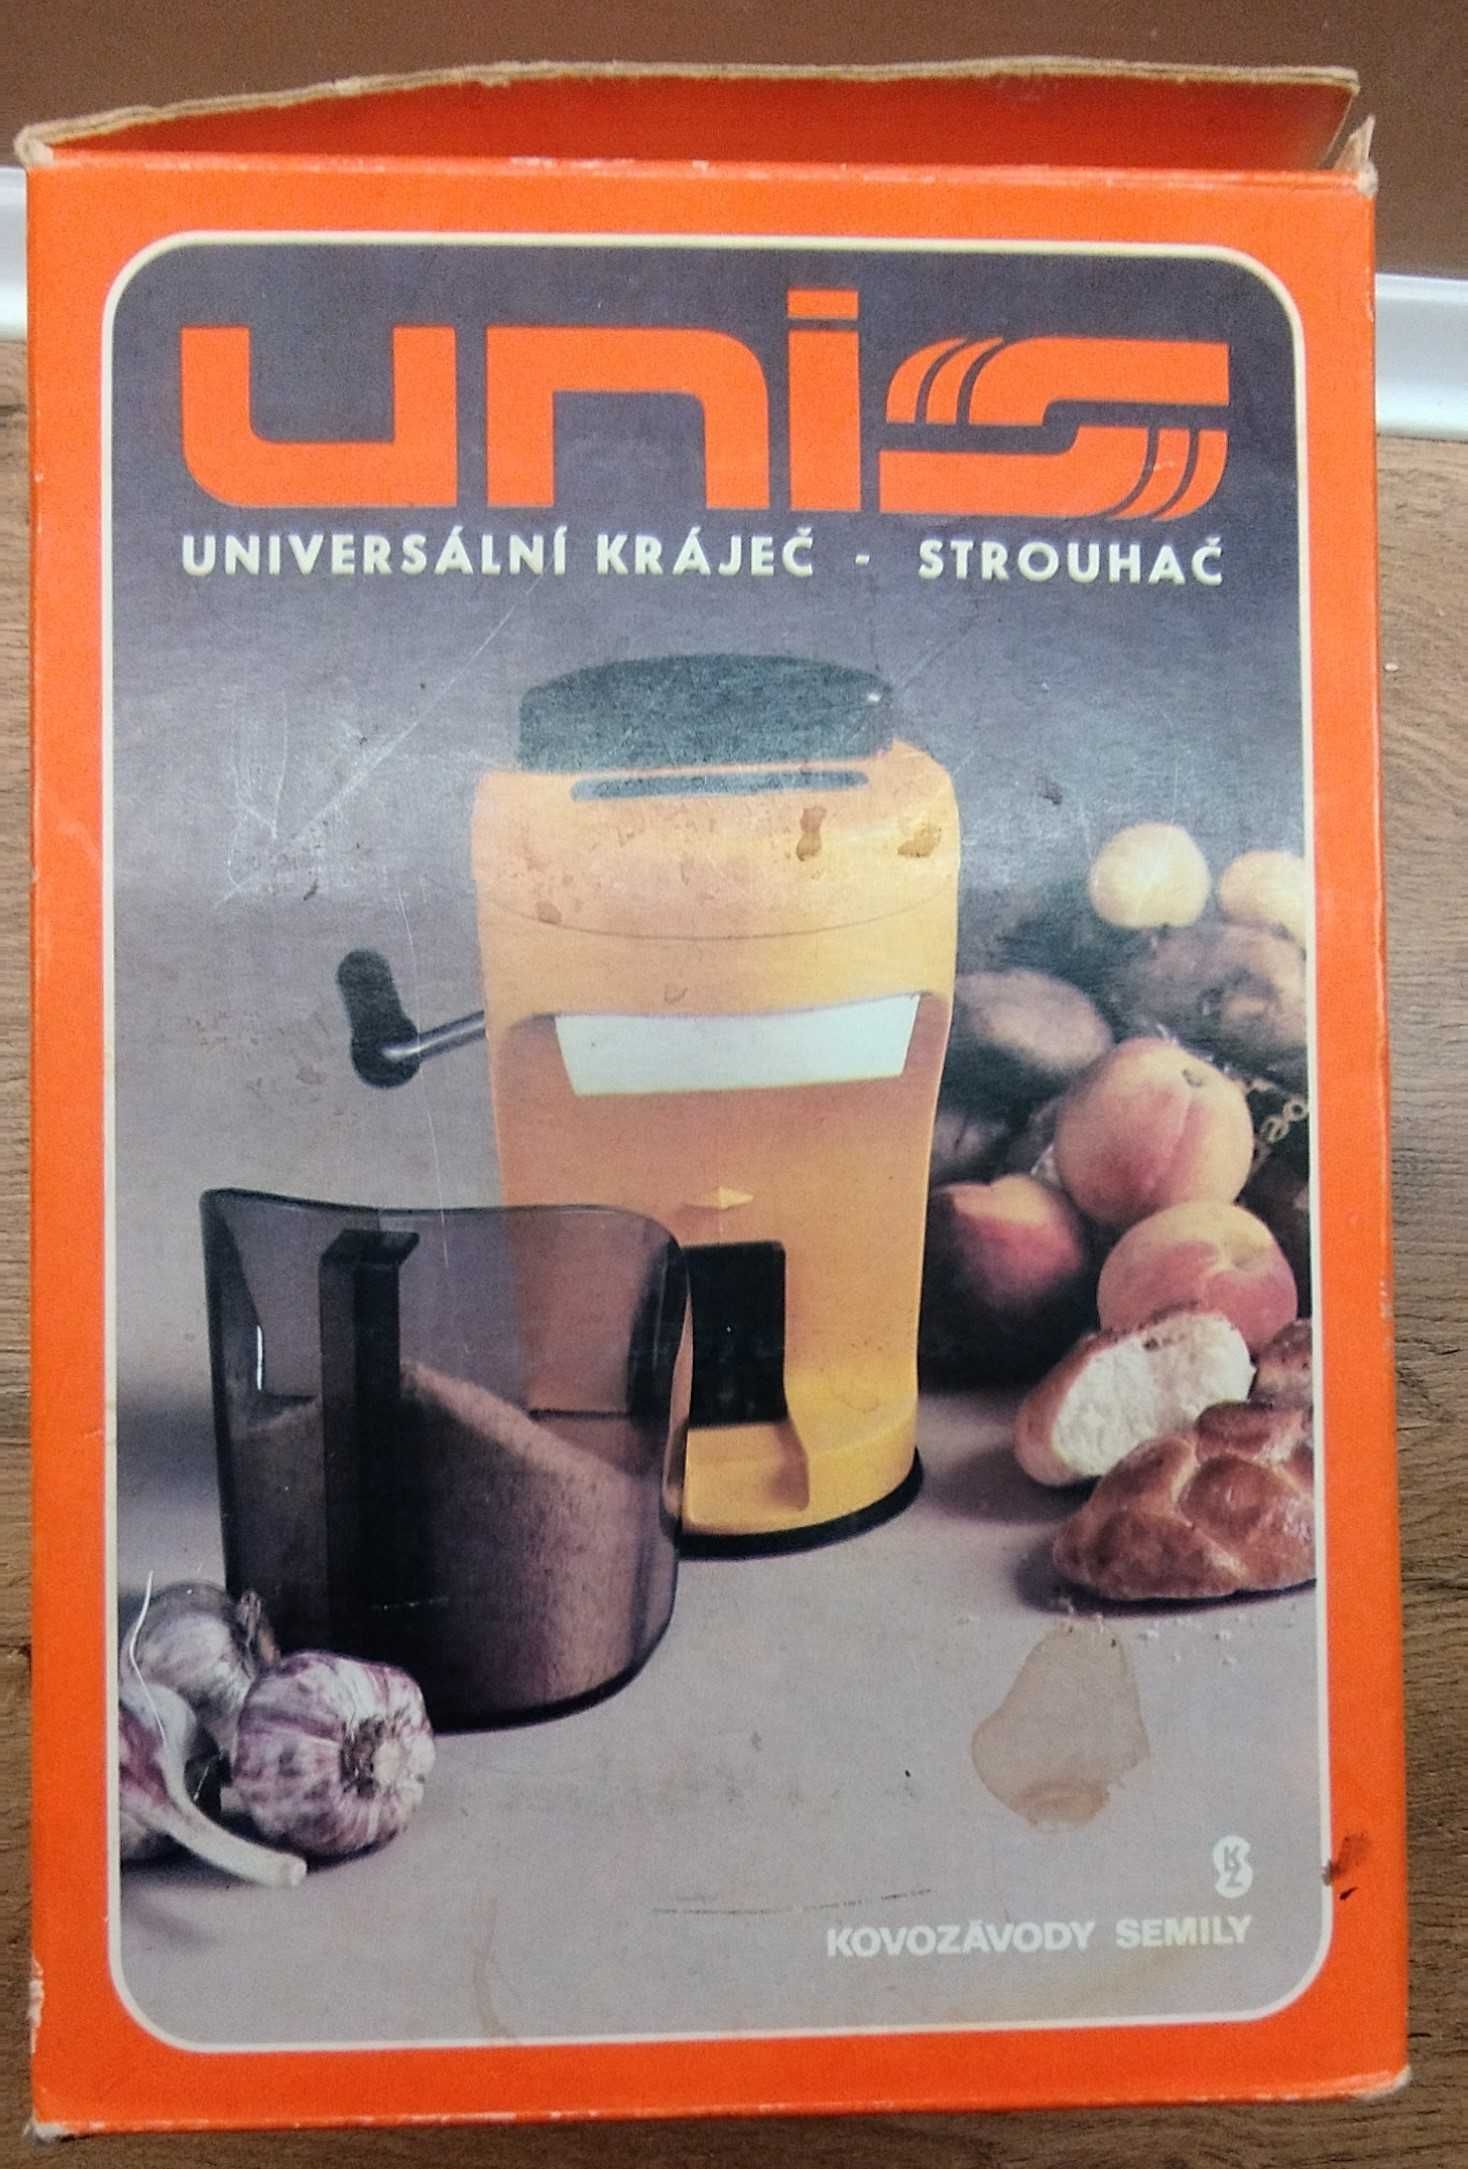 Rozdrabniacz ręczny, mini robot kulinarny UNIS